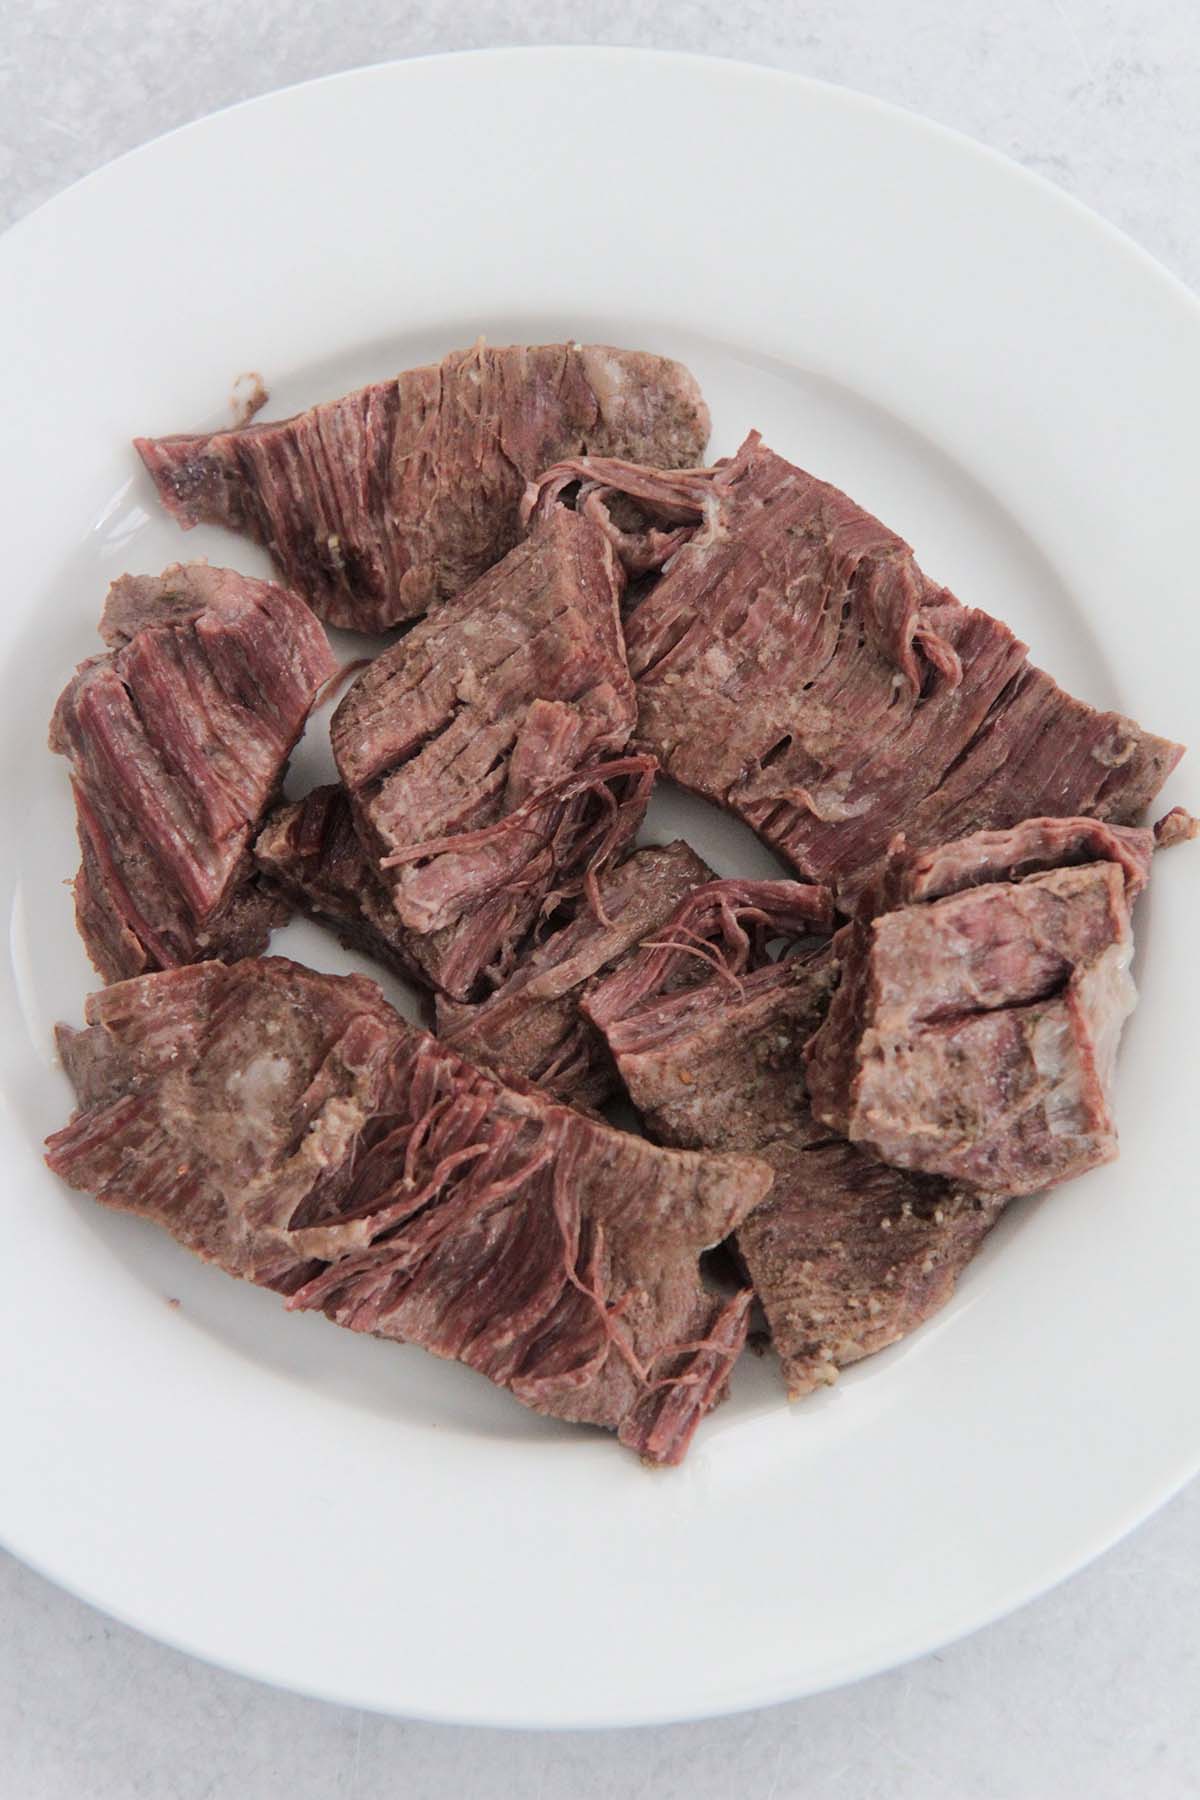 shredded flank steak on a white plate. 